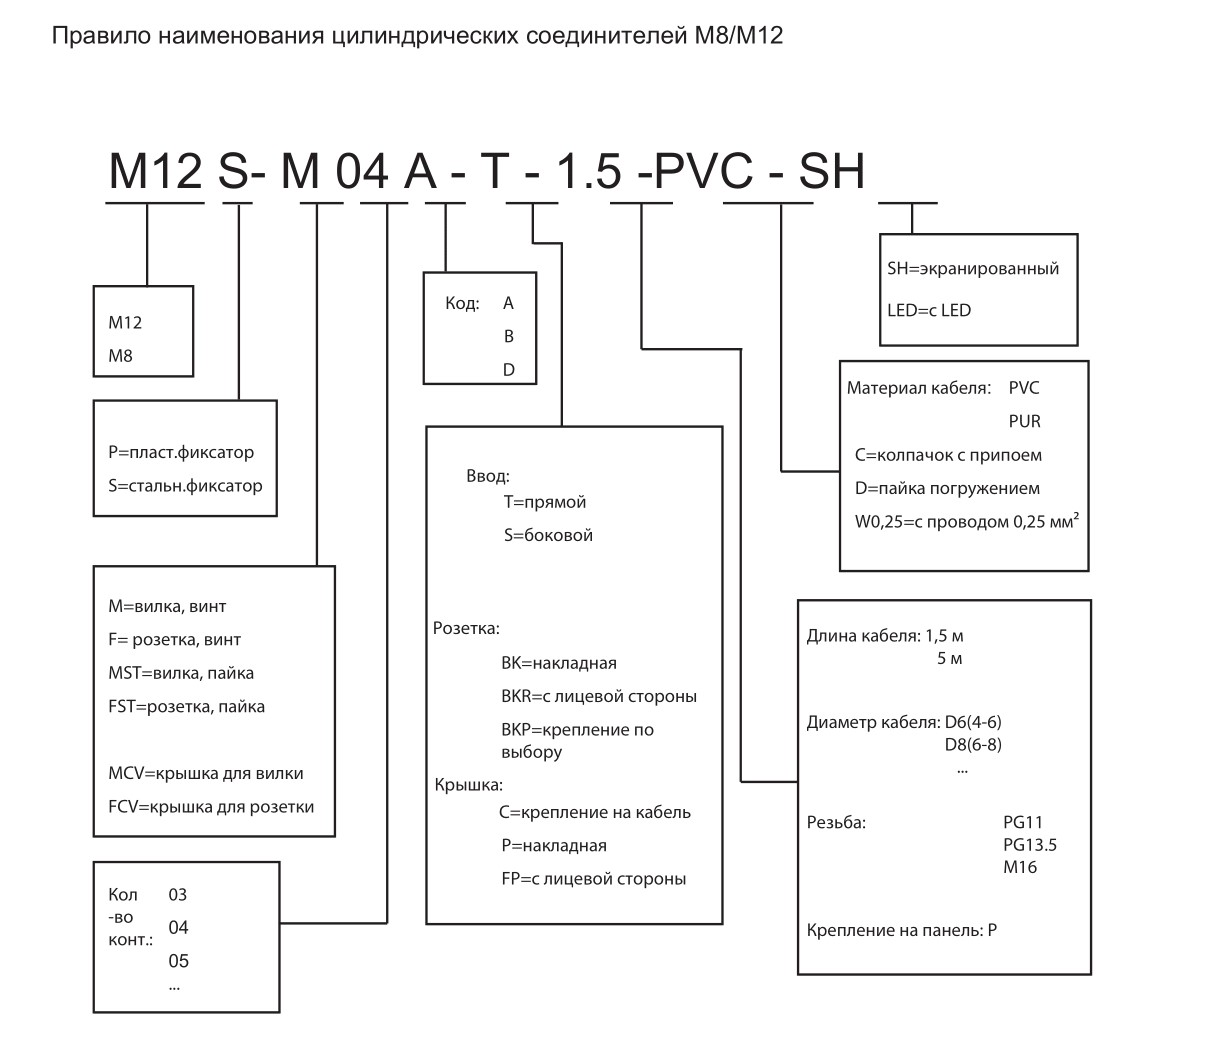 Цилиндрический соединитель-вилка/RJ45 (каб. сборка) M12-M04D-T/RJ45-7.5-DPUR-PFN 1630040014033: Структура обозначения